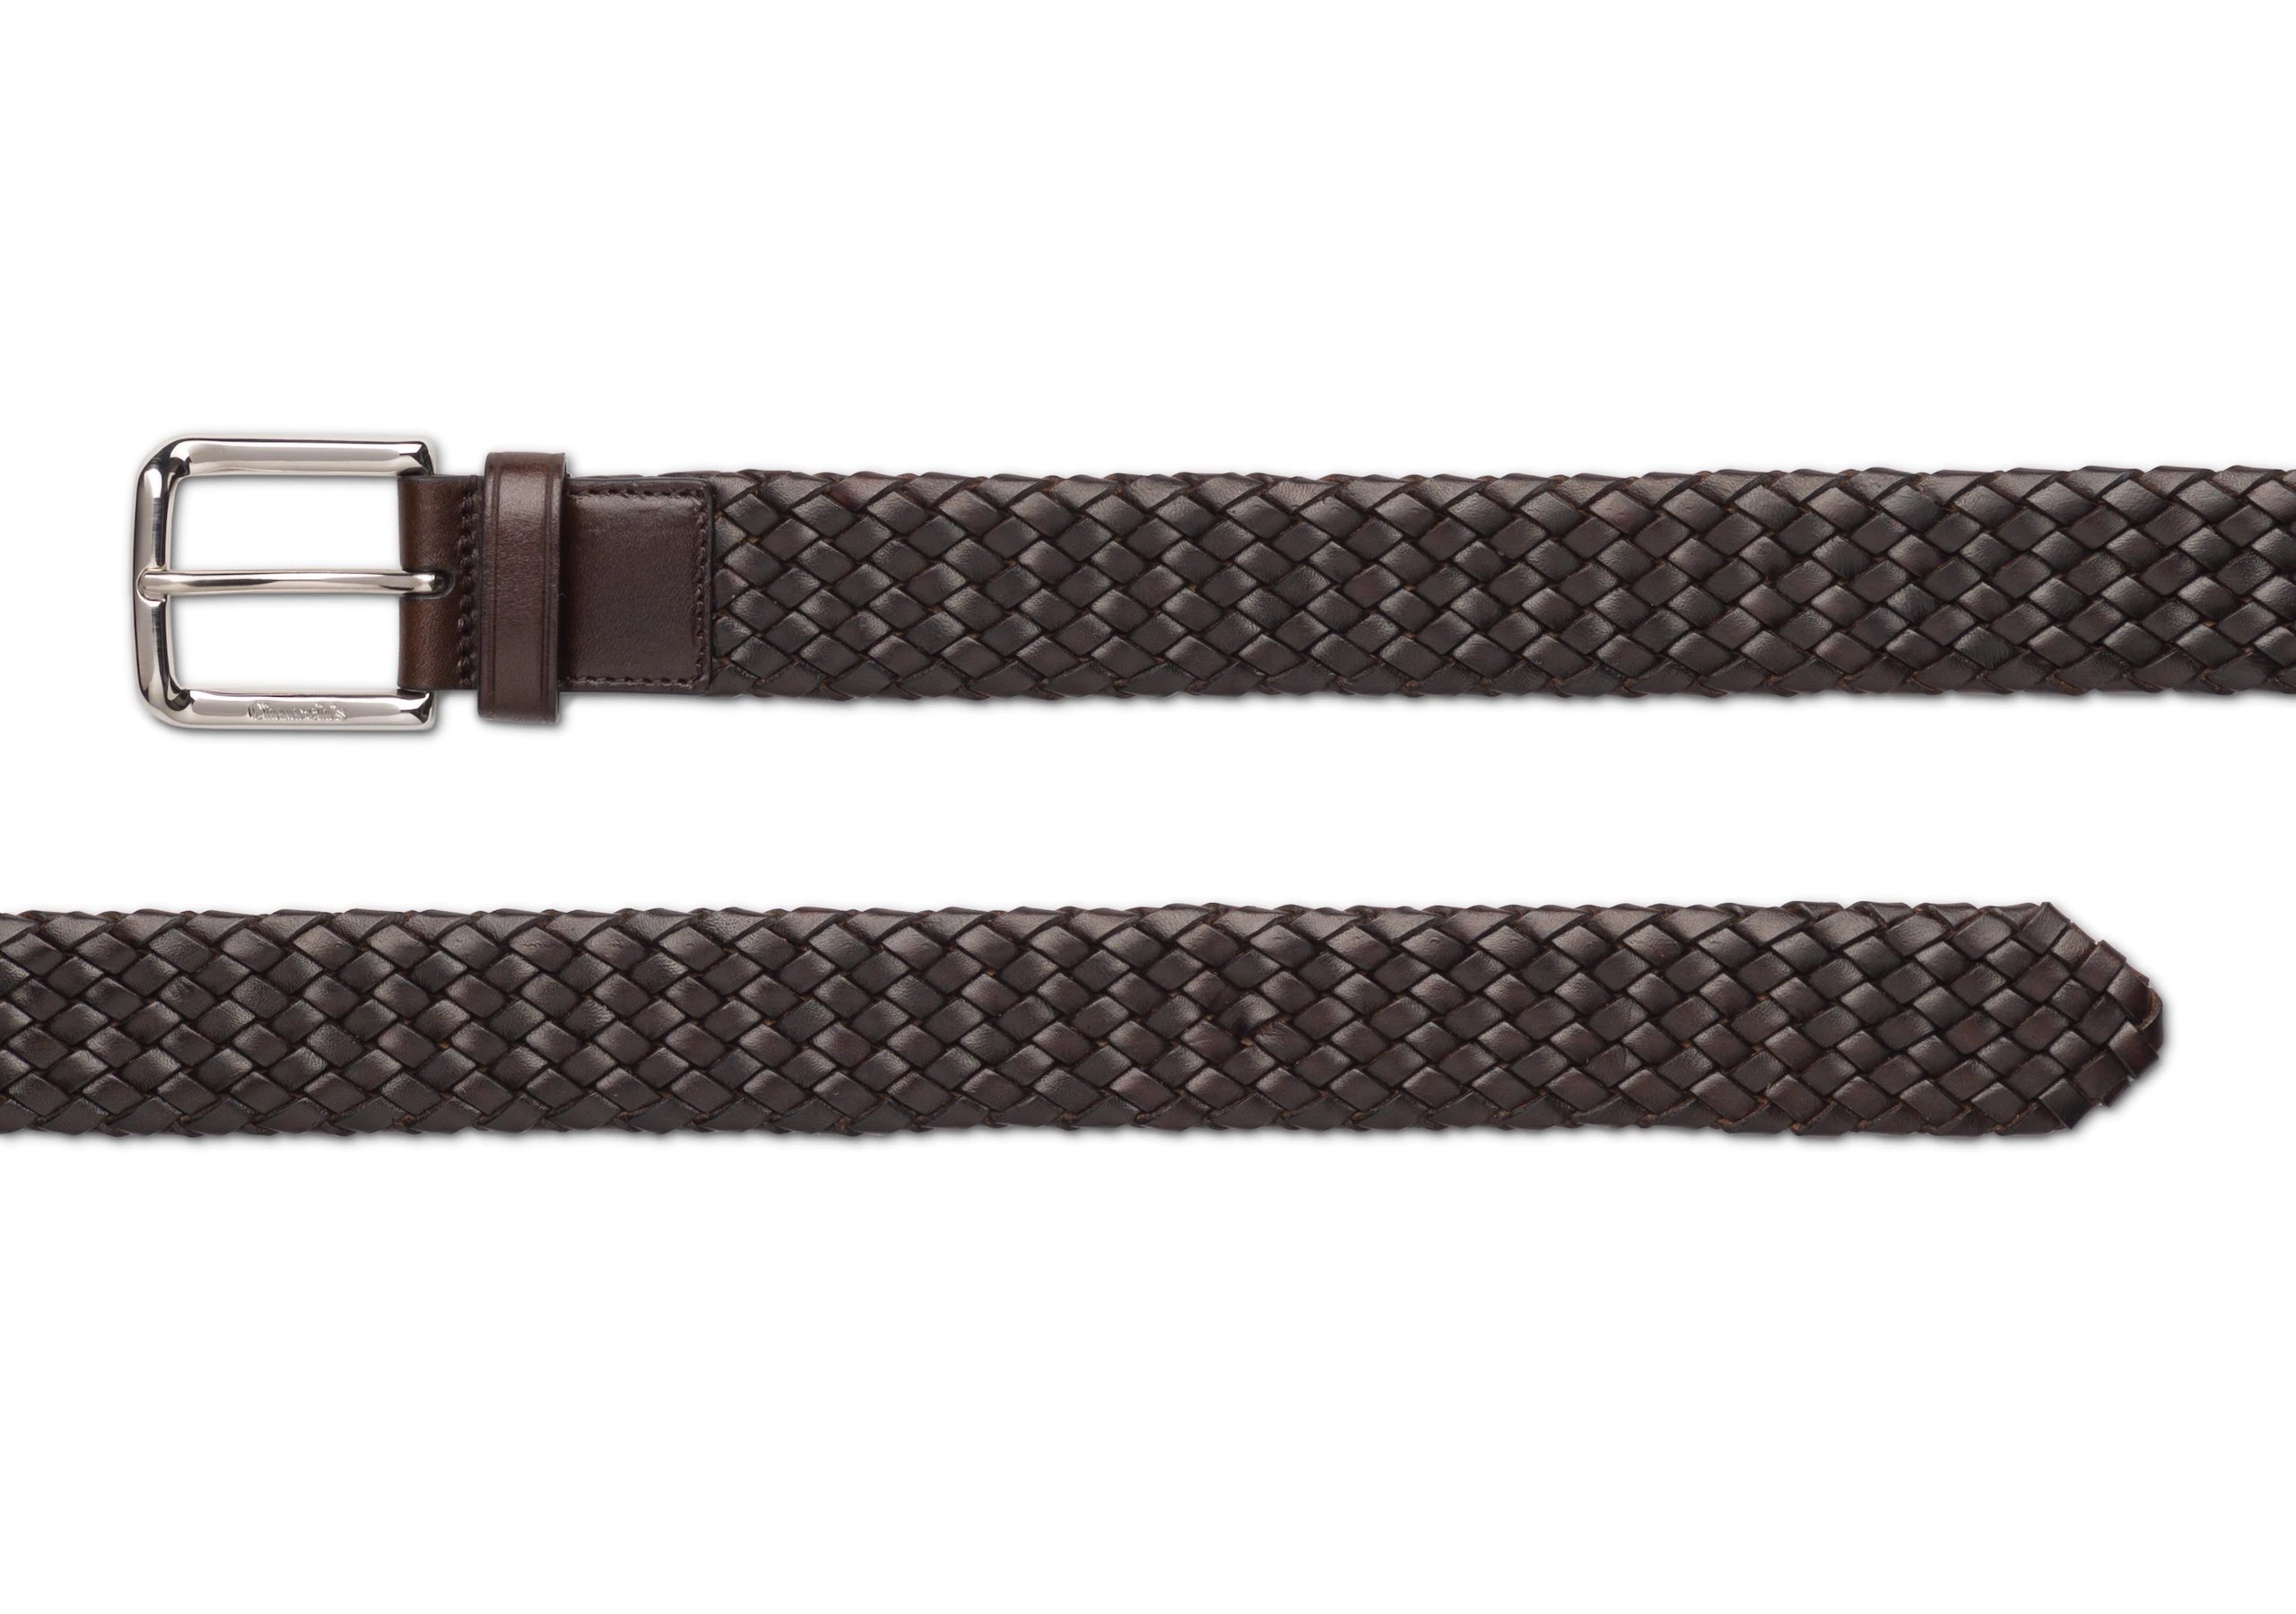 Woven belt
Polished Binder Weave Brown - 2